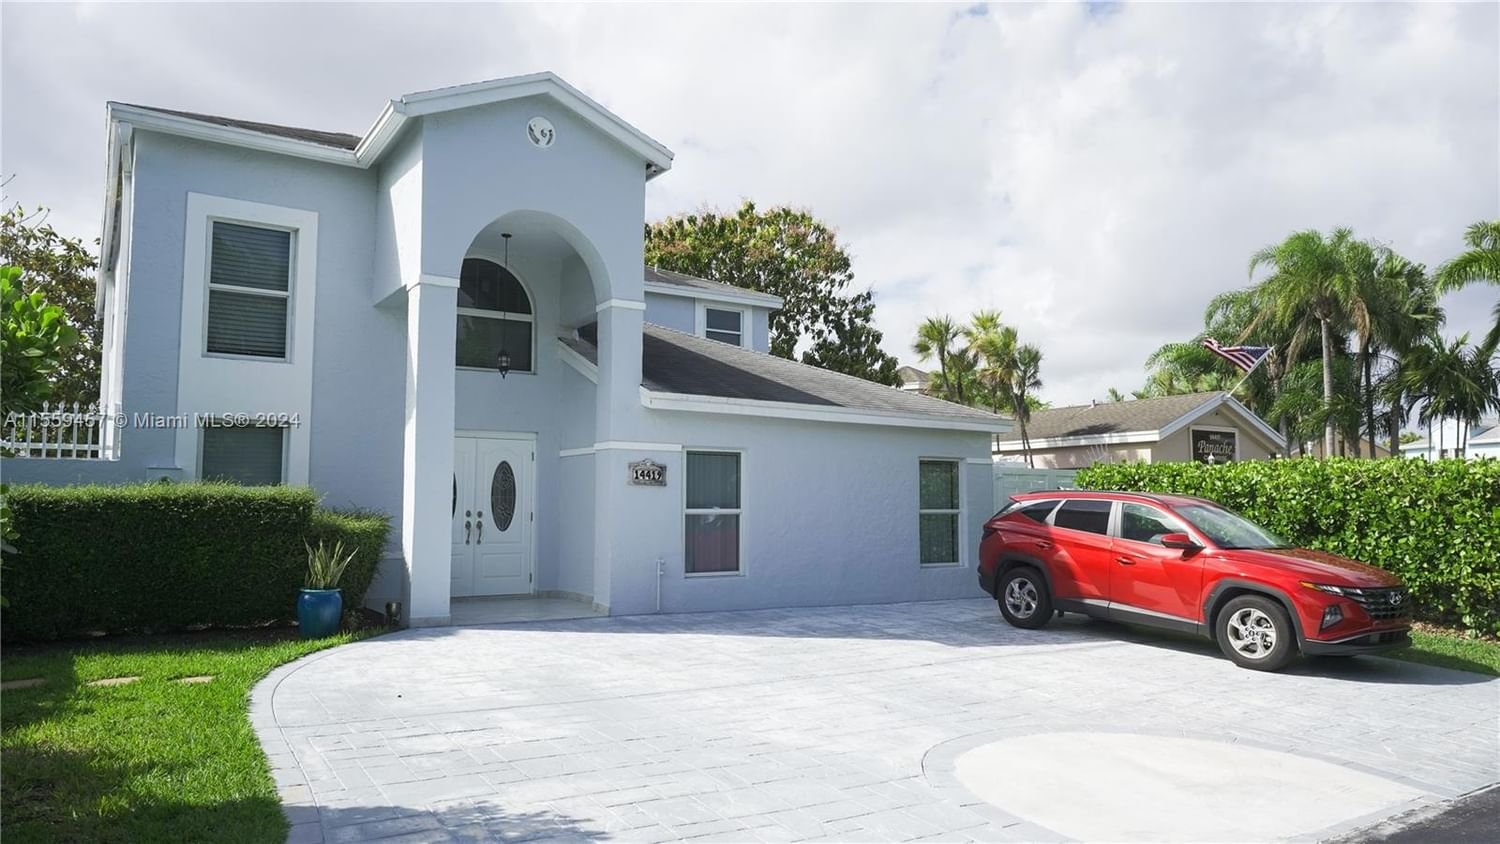 Real estate property located at 14419 94th Ln, Miami-Dade County, PANACHE SEC 2, Miami, FL